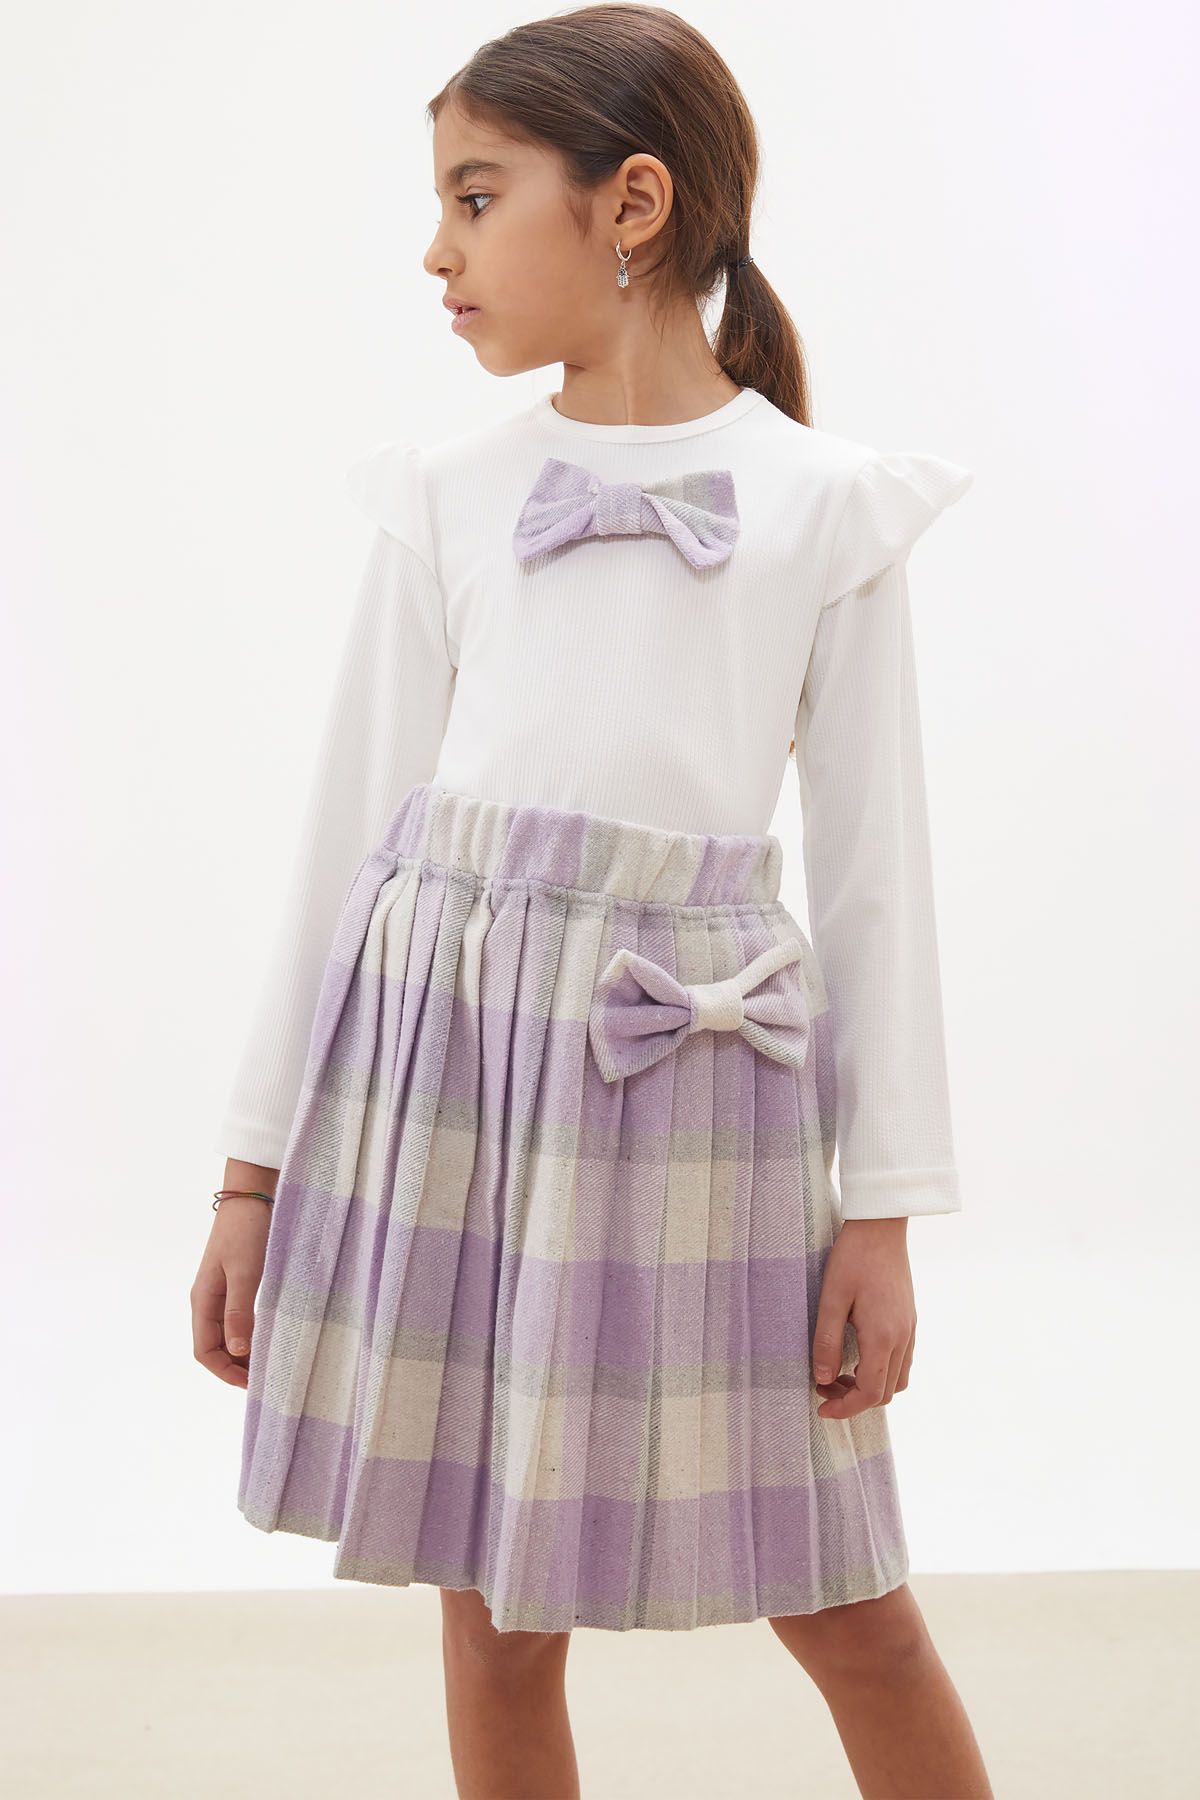 Cansın Mini Lila Ekose Etekli Fiyonklu Badili Kız Çocuk Elbise Takımı 5-9 Yaş 17737